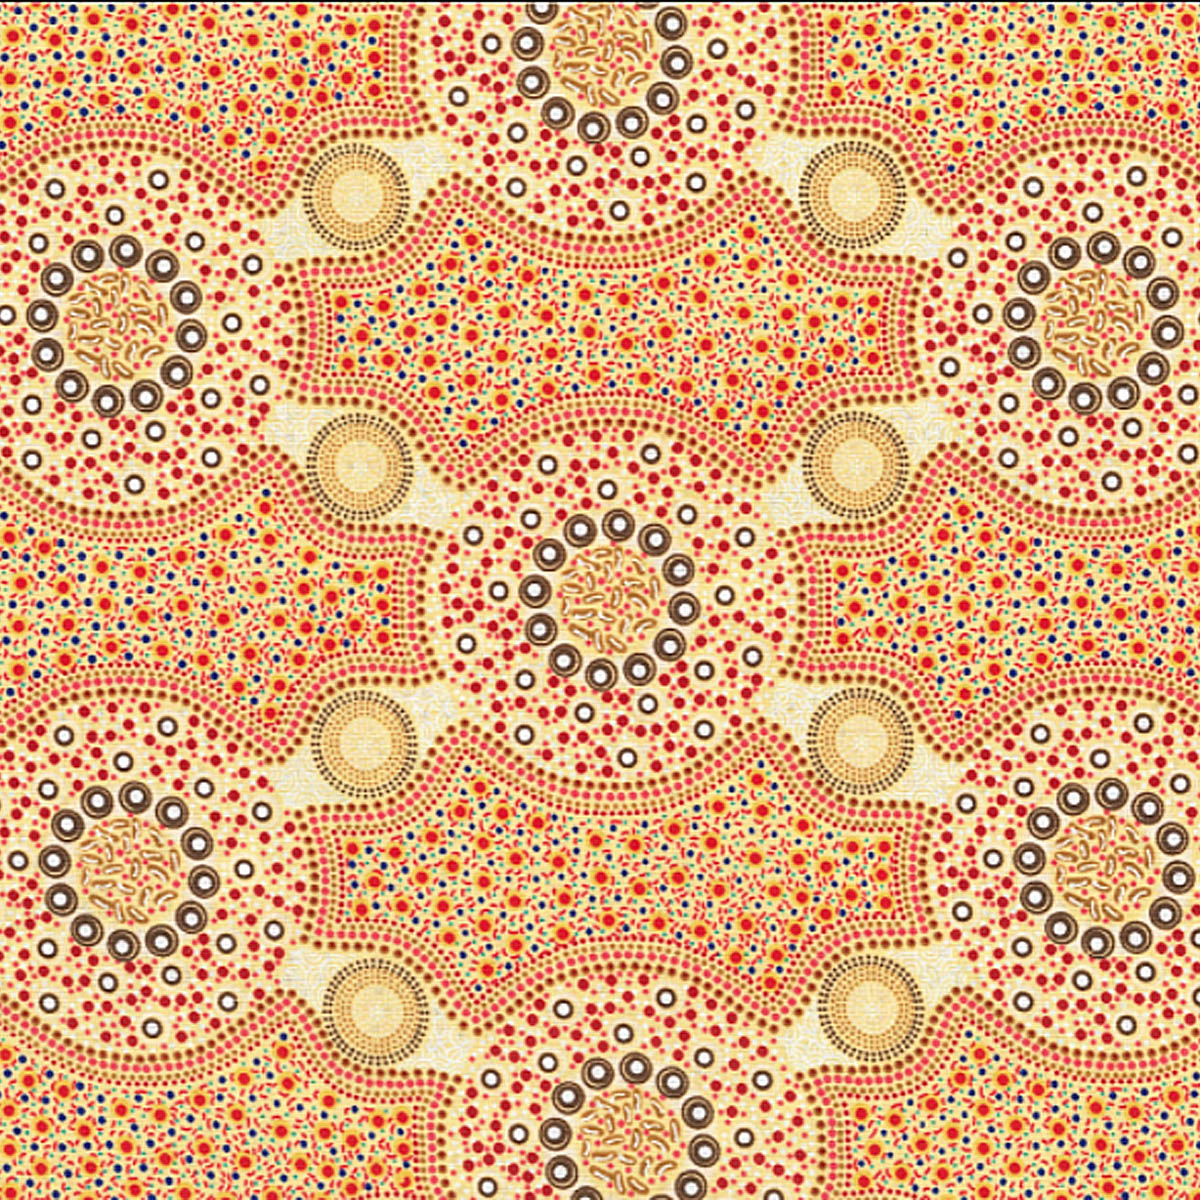 BUSH FLOWERS ECRU by Aboriginal Artist Marlene Doolan